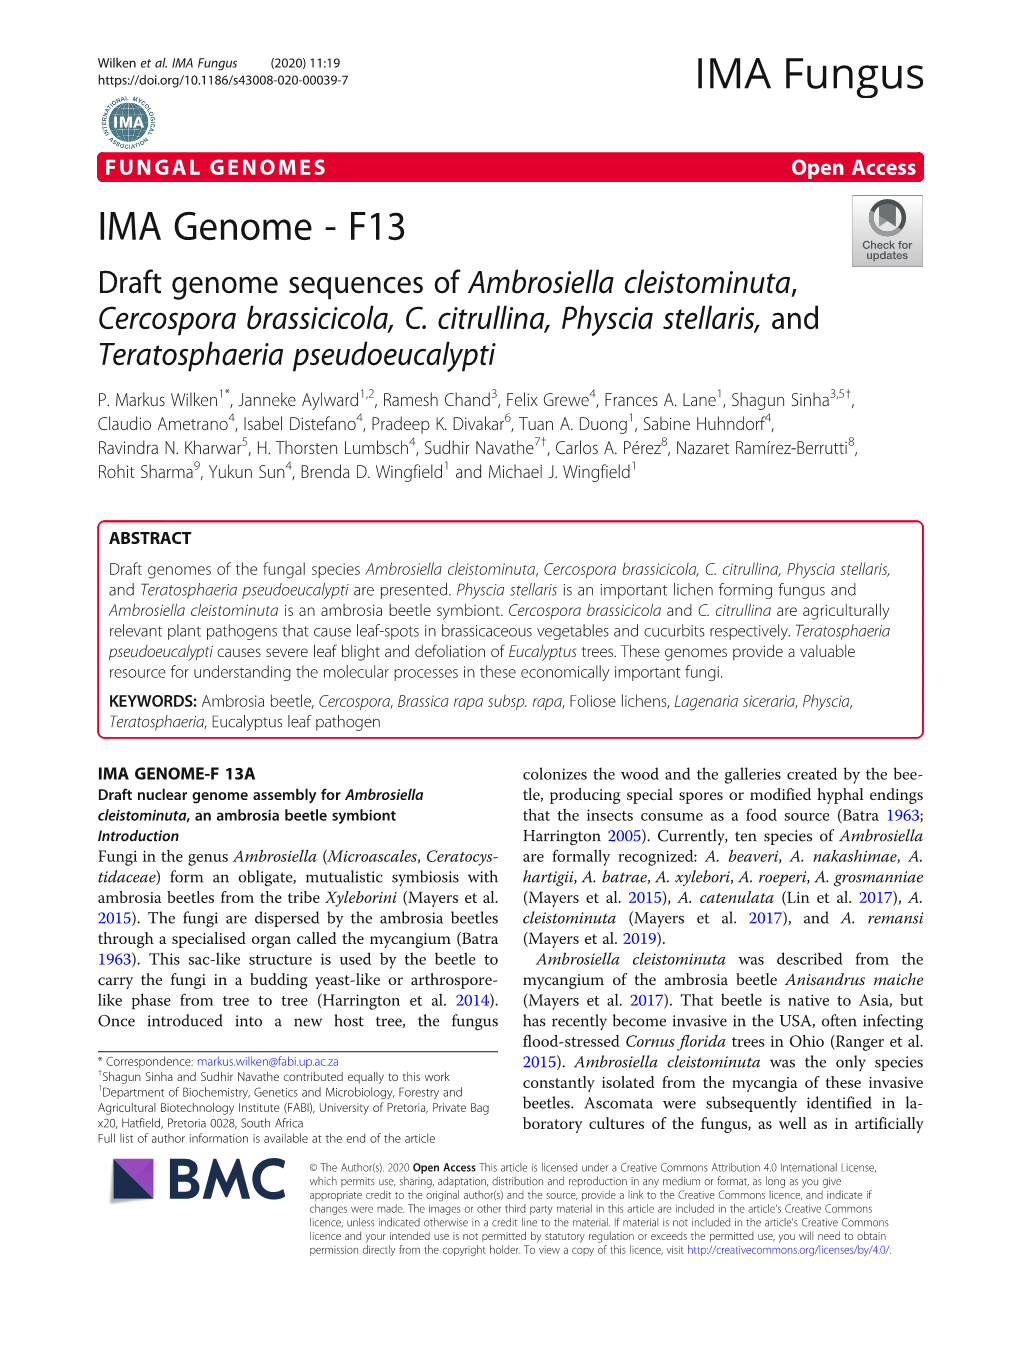 IMA Genome - F13 Draft Genome Sequences of Ambrosiella Cleistominuta, Cercospora Brassicicola, C